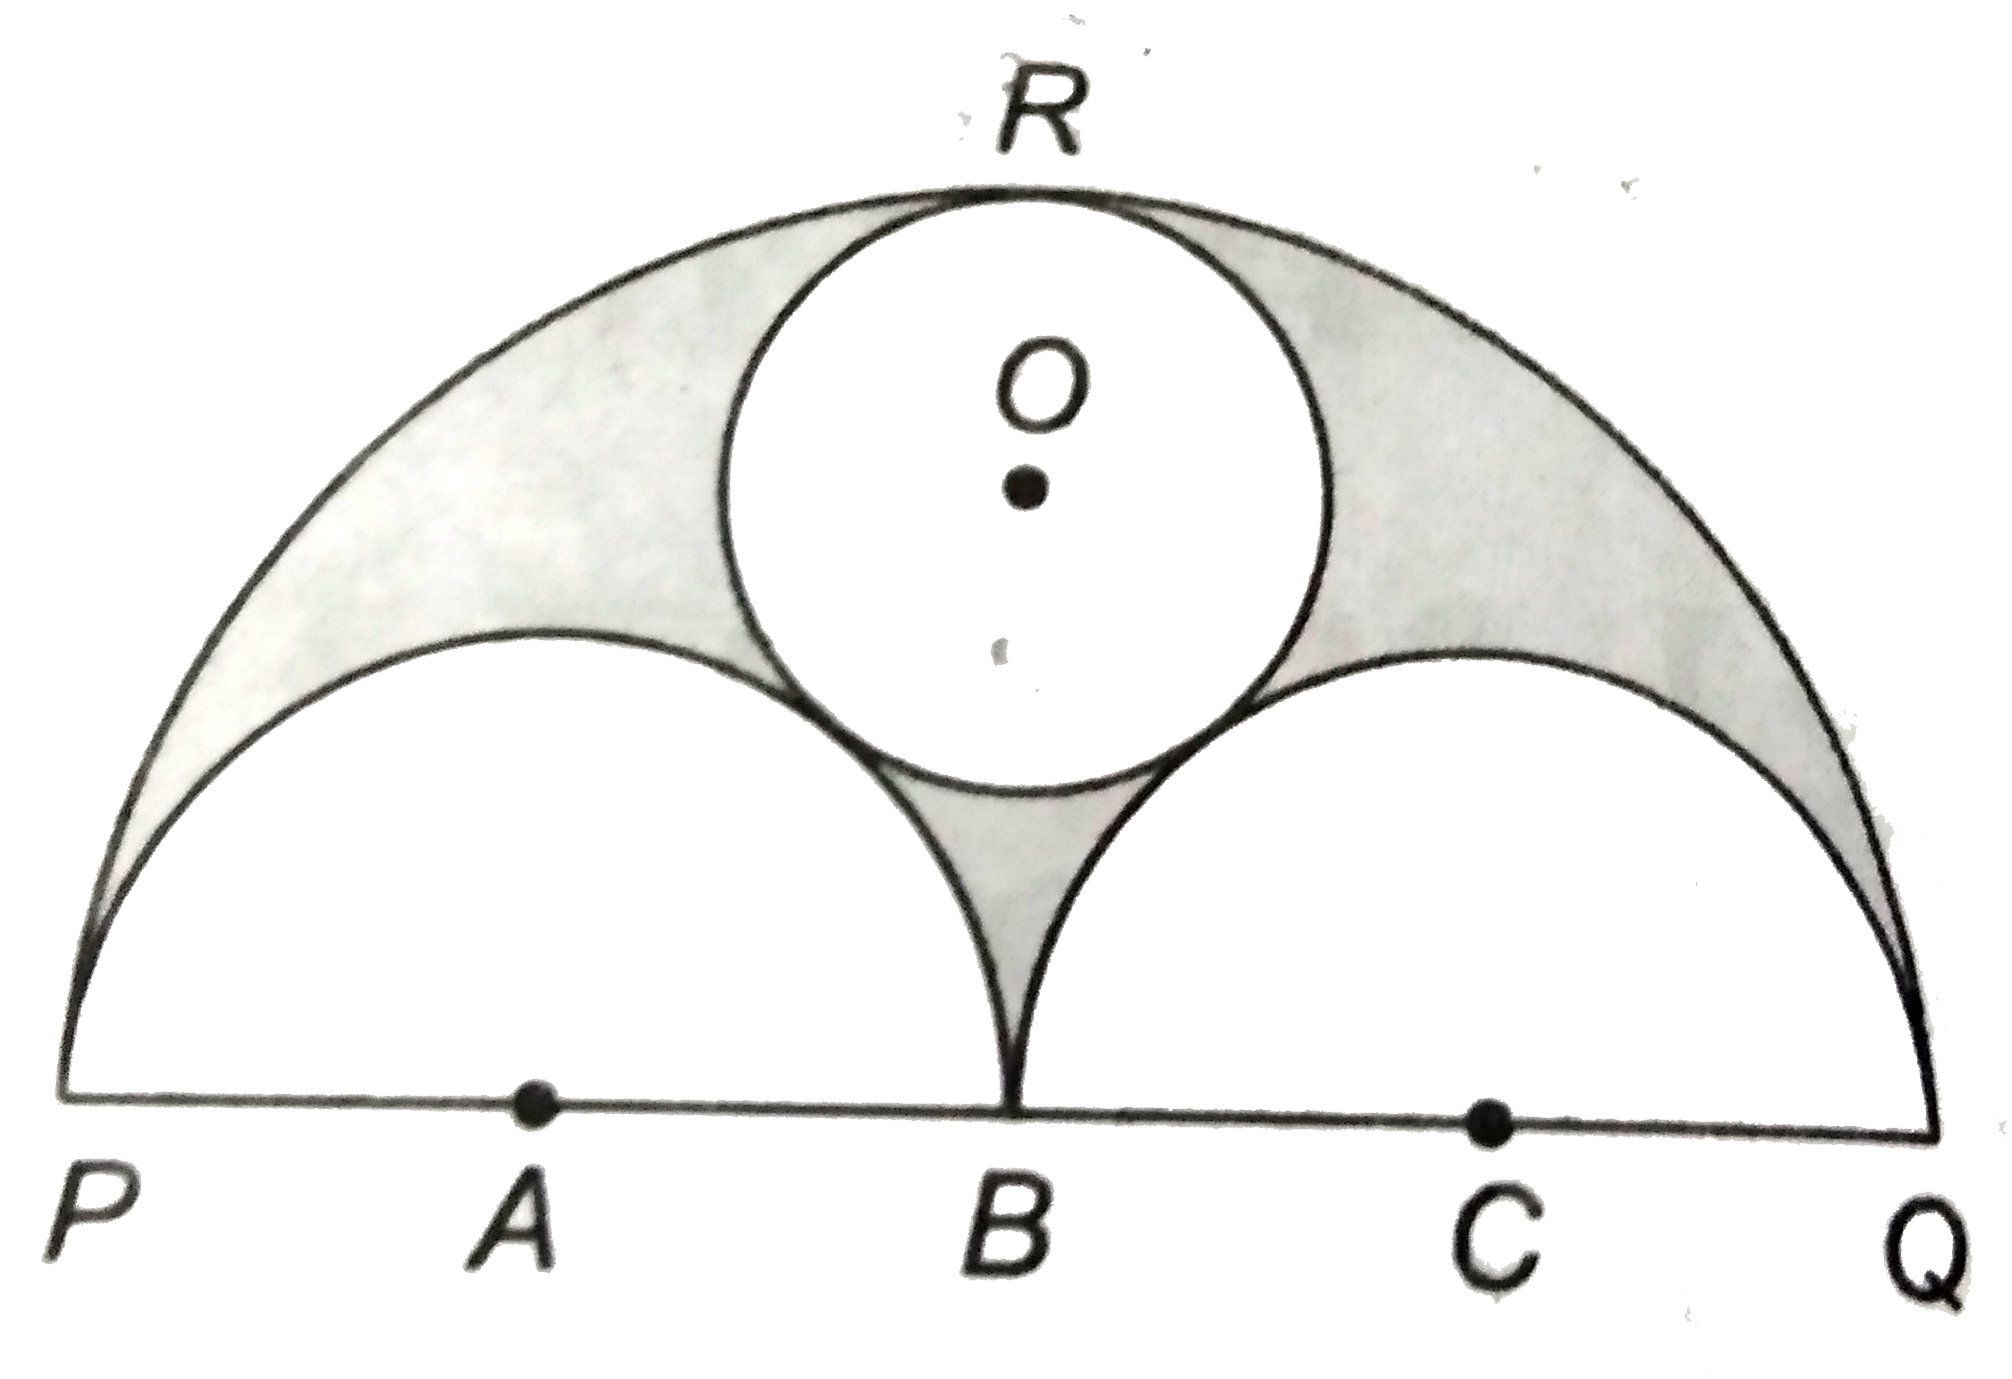 चित्र में , PQ, PB और BQ को व्यास  लेकर  तीन  अर्द्धवृत्त  खींचे  गये है । यहाँ PB = BQ = 21  सेमी है ।  एक वृत्त O केंद्र  से , तीनों अर्द्धवृतों को स्पर्श  करता हुआ  खींचा  जाता है । इसकी  त्रिज्या  और छायांकित  भाग का क्षेत्रफल  भी ज्ञात कीजिए ।